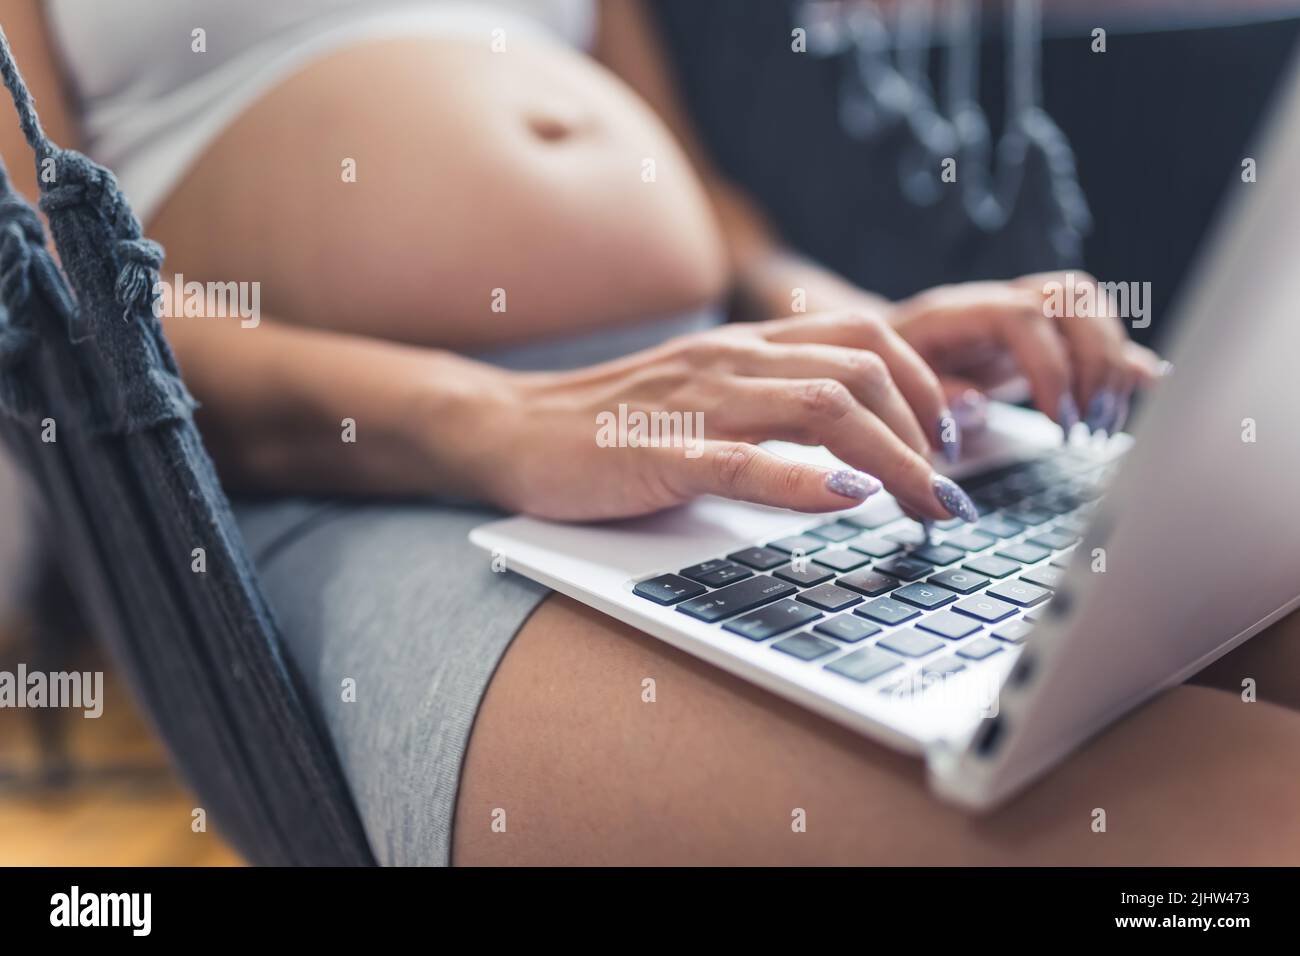 Persona incinta caucasica con lunghe unghie scintillanti che lavorano su un computer portatile mentre si siede in un'amaca interna. Foto di alta qualità Foto Stock